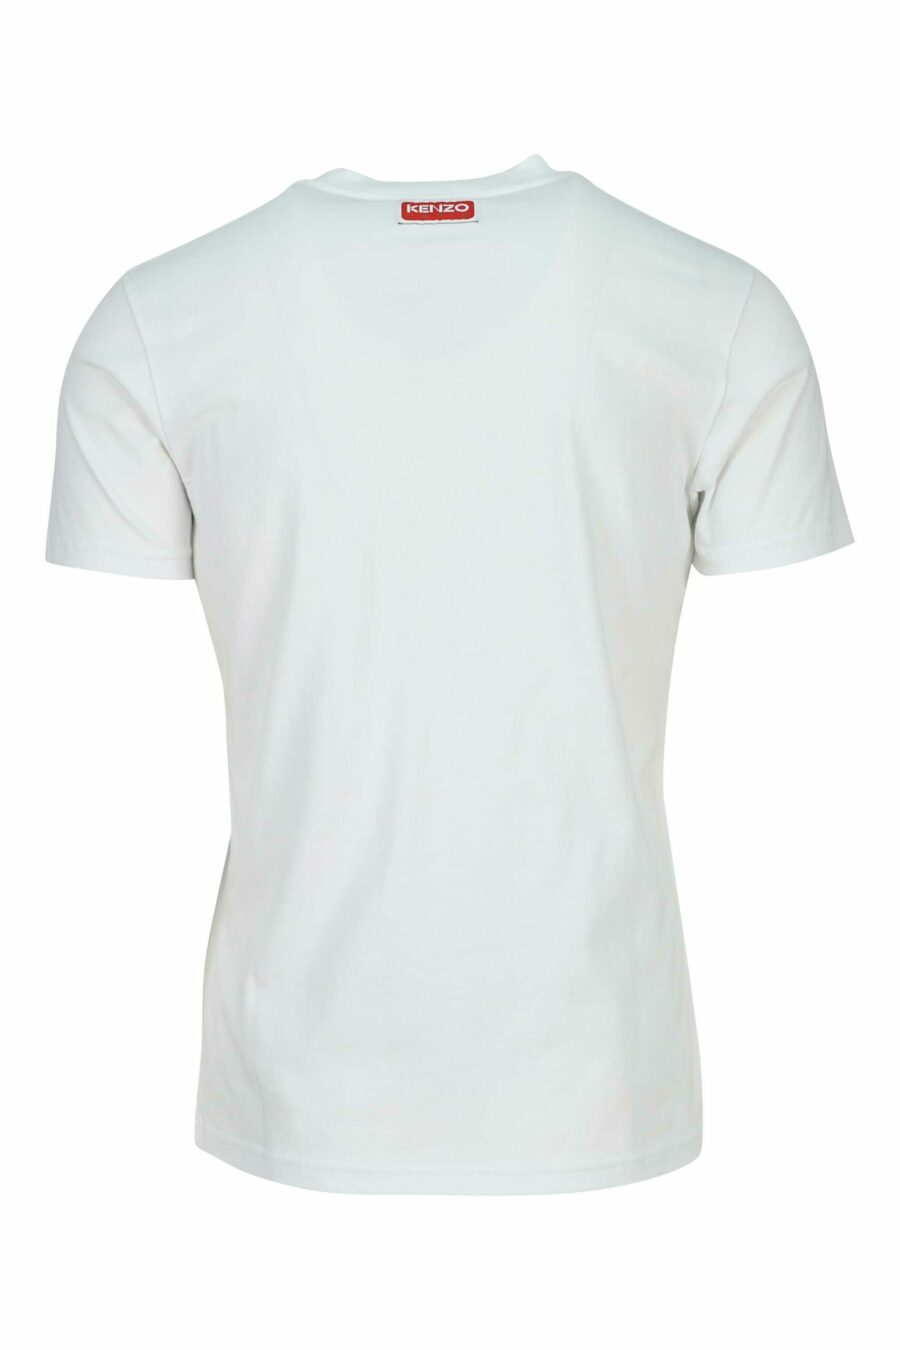 Camiseta blanca "slim" con minilogo tigre - 3612230625013 1 scaled